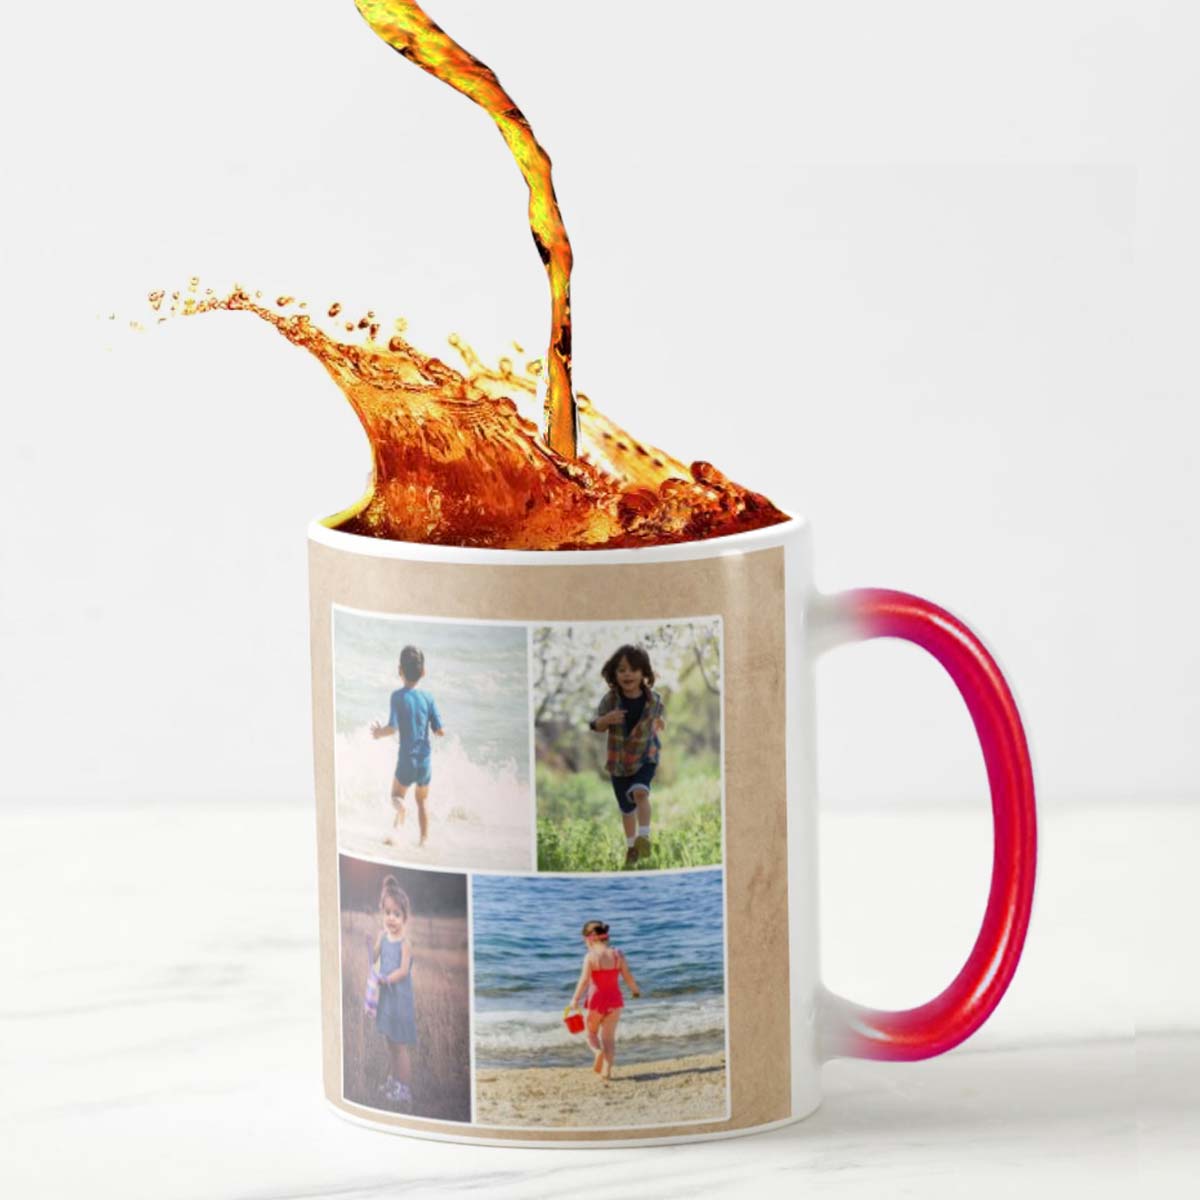 Personalised Photo Magic Mug